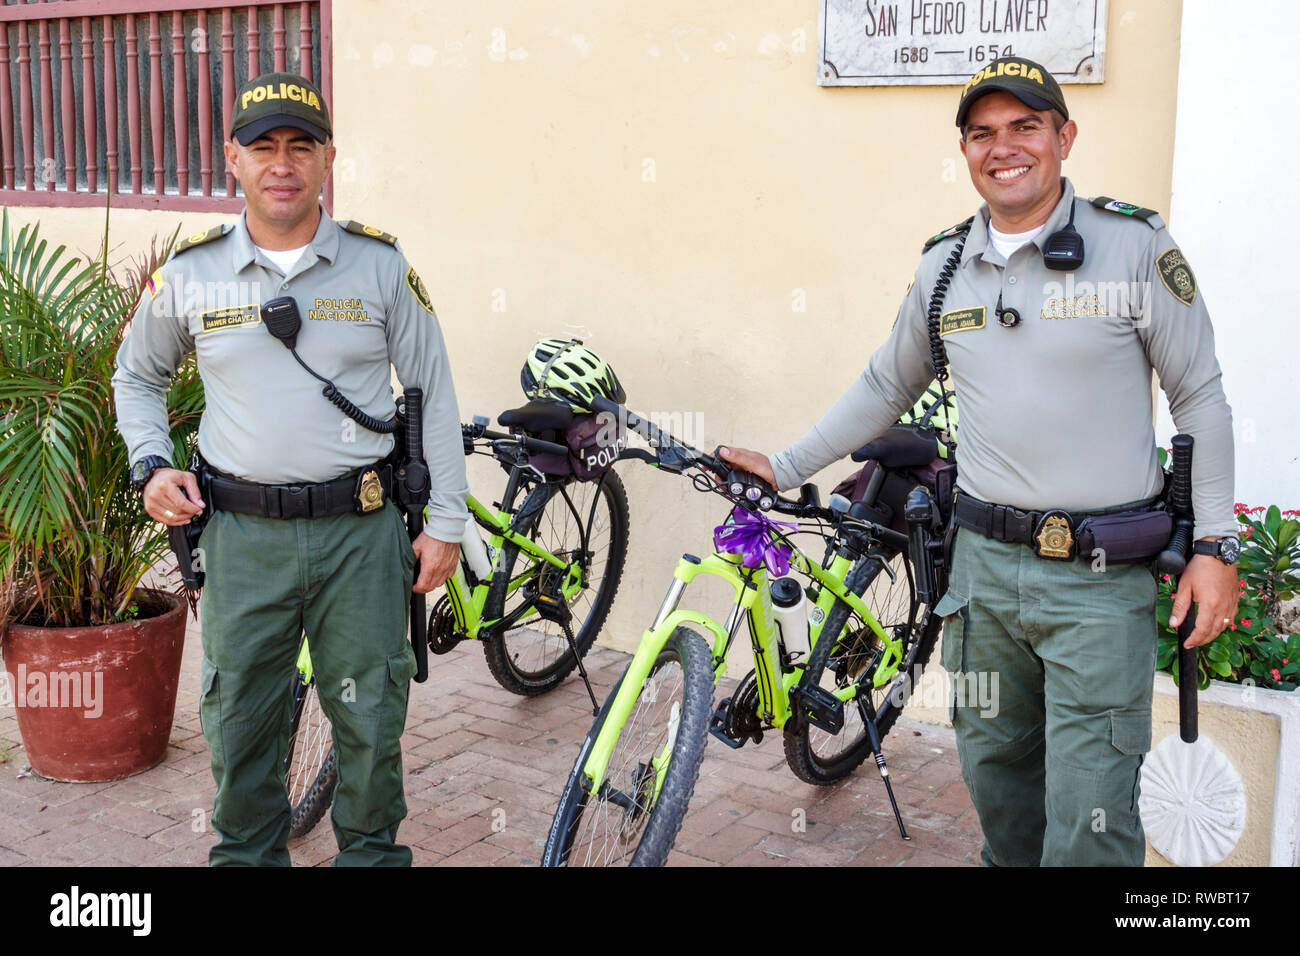 Cartagena Colombie,Plaza San Pedro Claver,résidents hispaniques,police nationale,police,officier,uniforme,application de la loi,homme hommes,Bicycle bic Banque D'Images